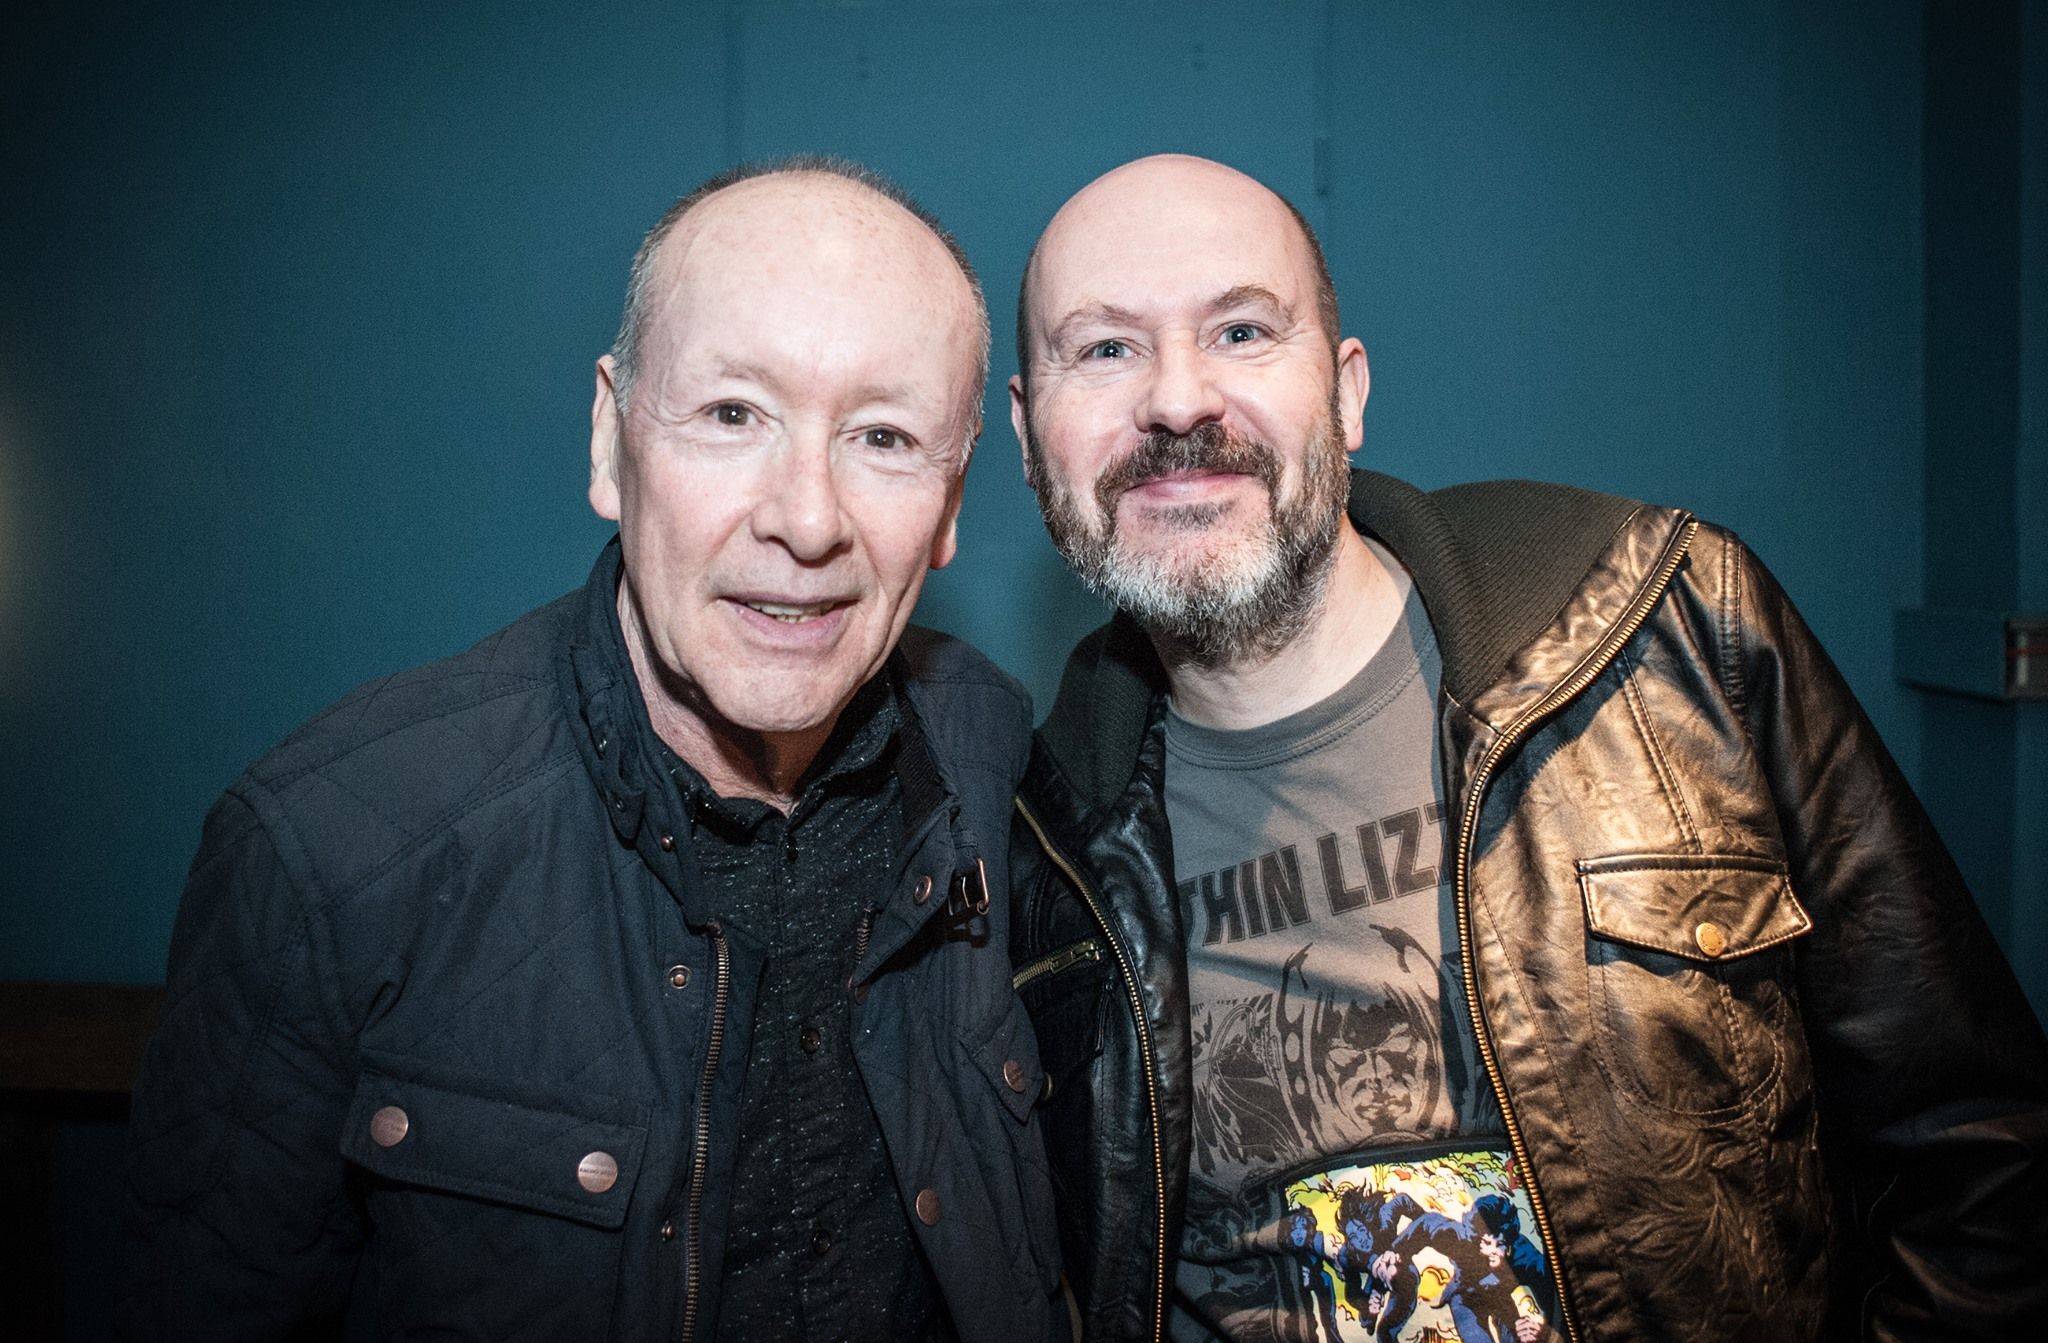 Interview mit Brian Downey in der Rock City Radio Show Berlin